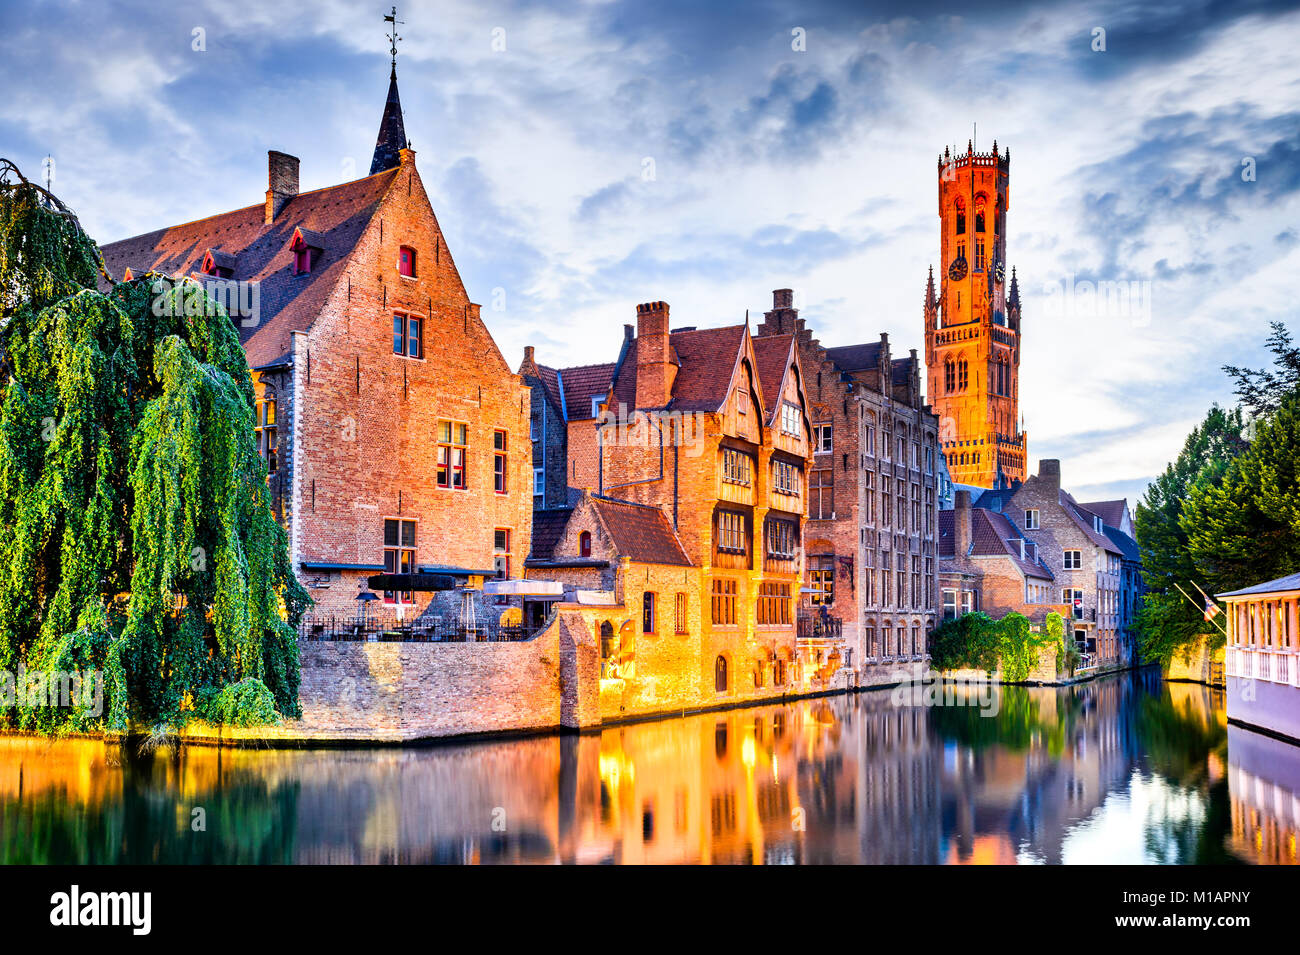 Bruges, Belgio. Immagine con Rozenhoedkaai in Brugge, Dijver fiume canal crepuscolo e la torre campanaria (Belfort) torre. Foto Stock